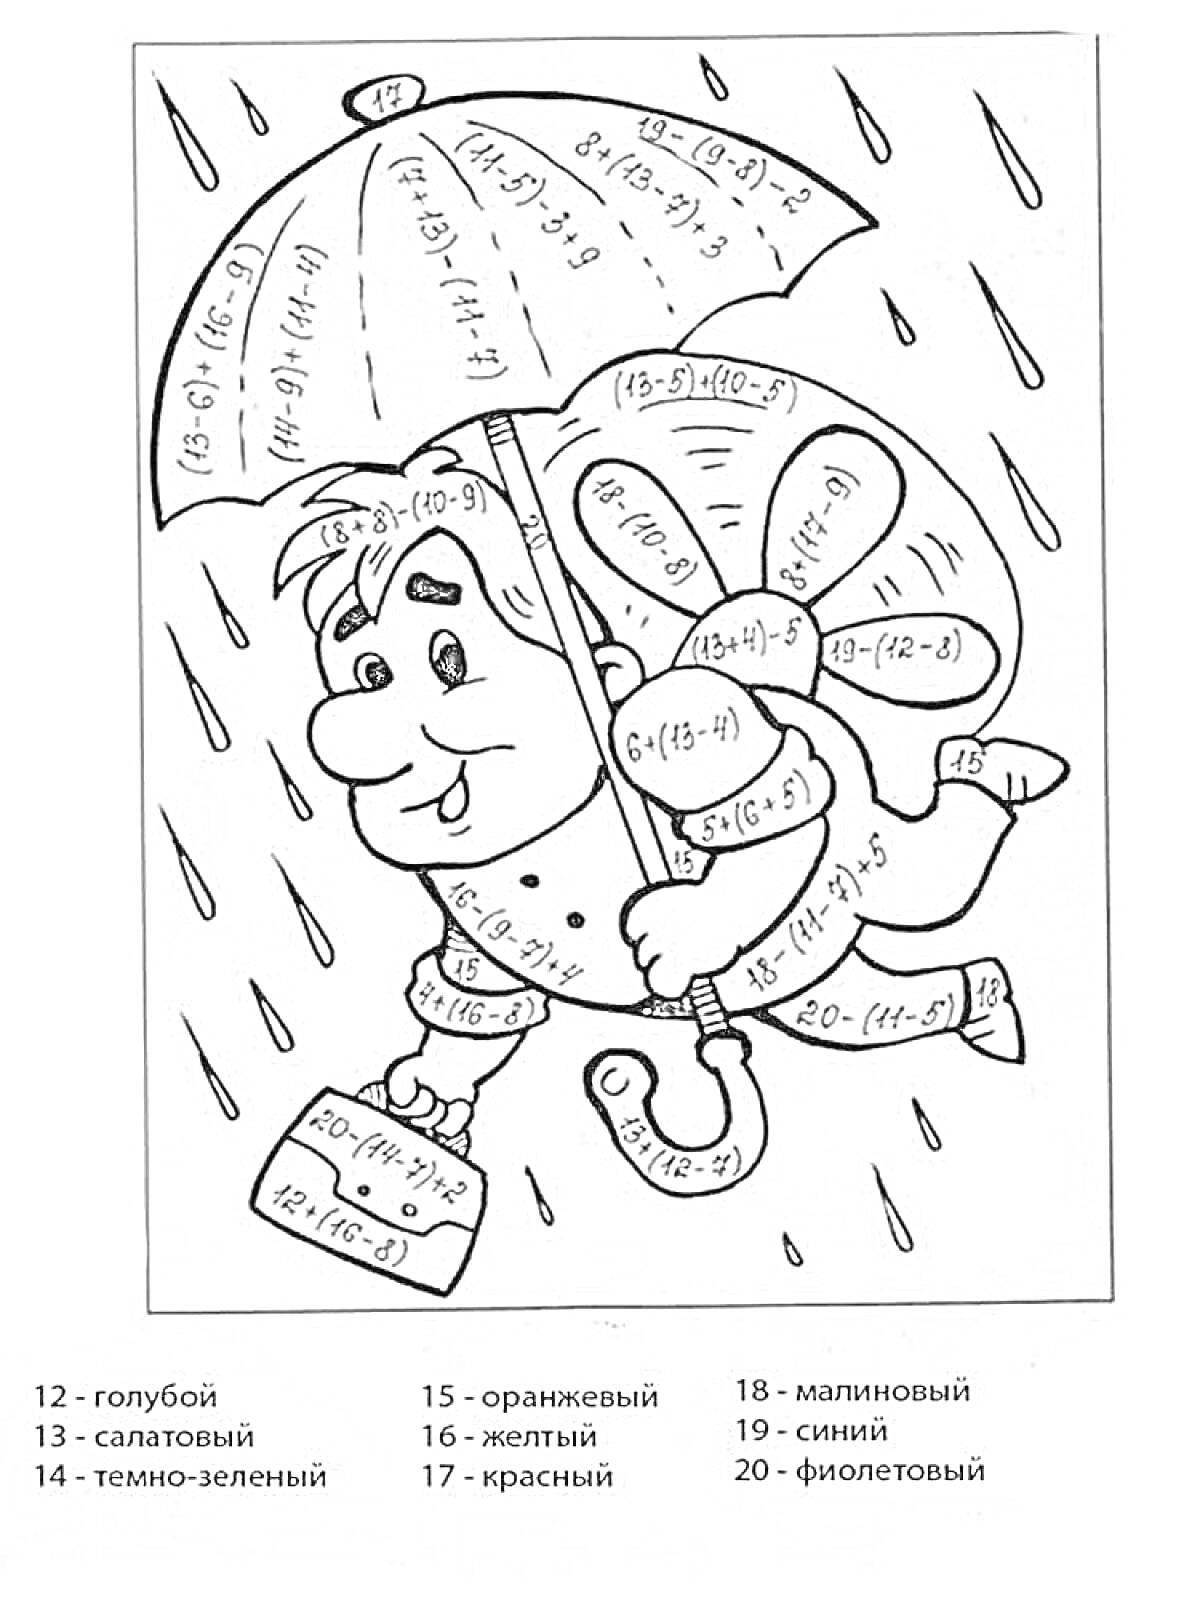 Мальчик с зонтом под дождем, цвет по результатам вычислений